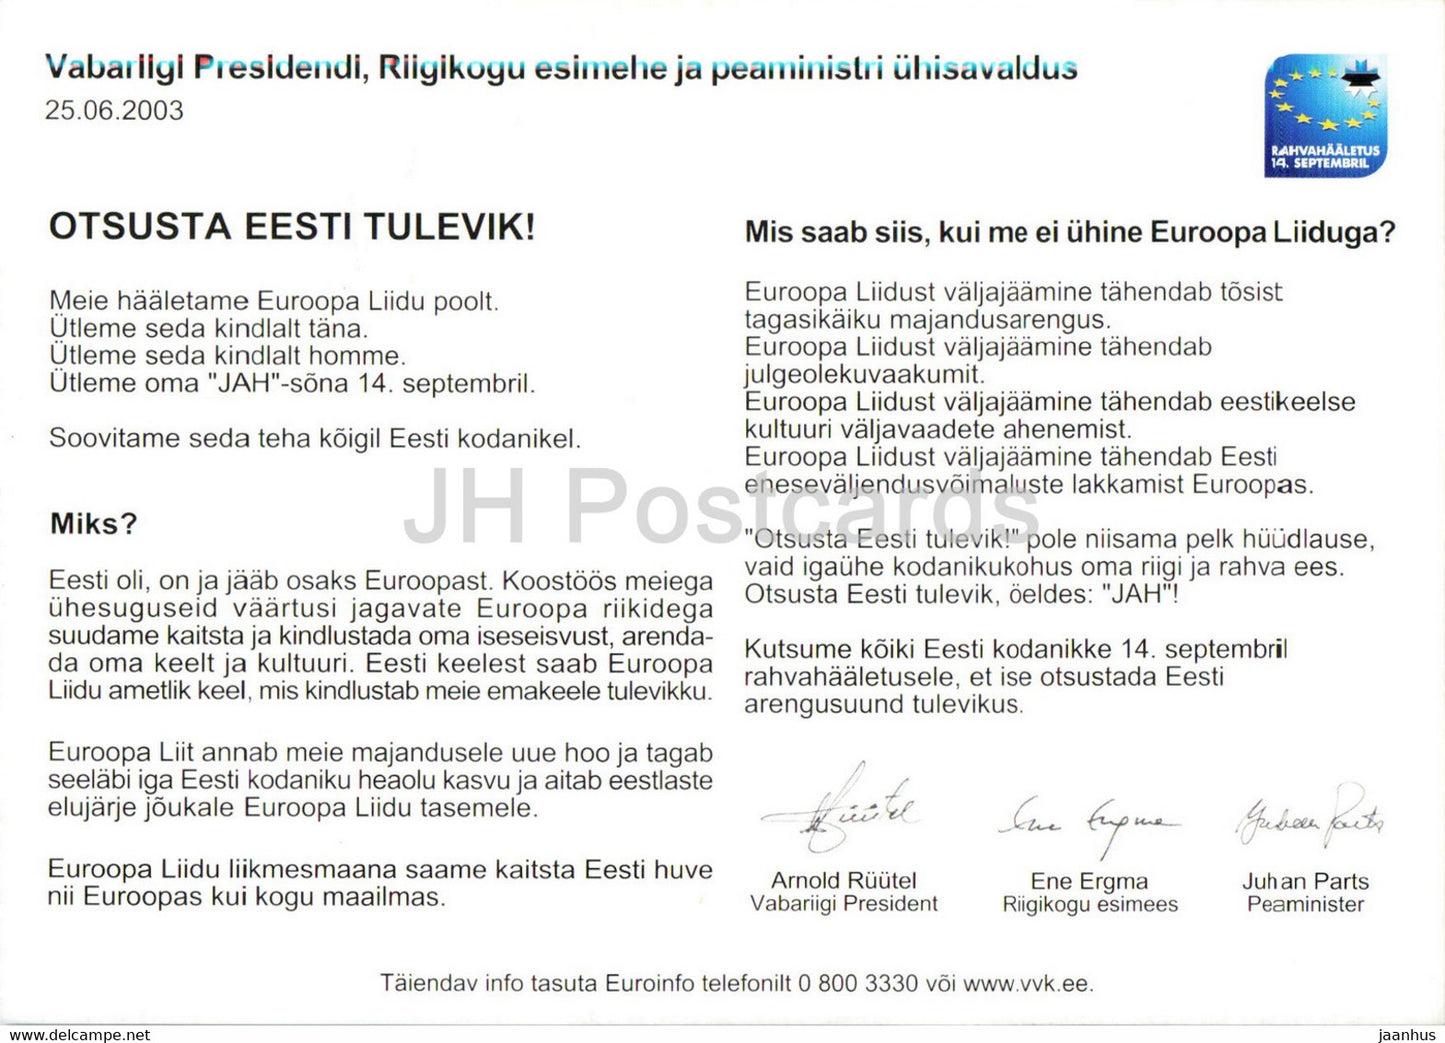 Estnische Politiker - Präsident Arnold Ruutel - Ene Ergma - Juhan Parts - EU-Beitritt - 2003 - Estland - unbenutzt